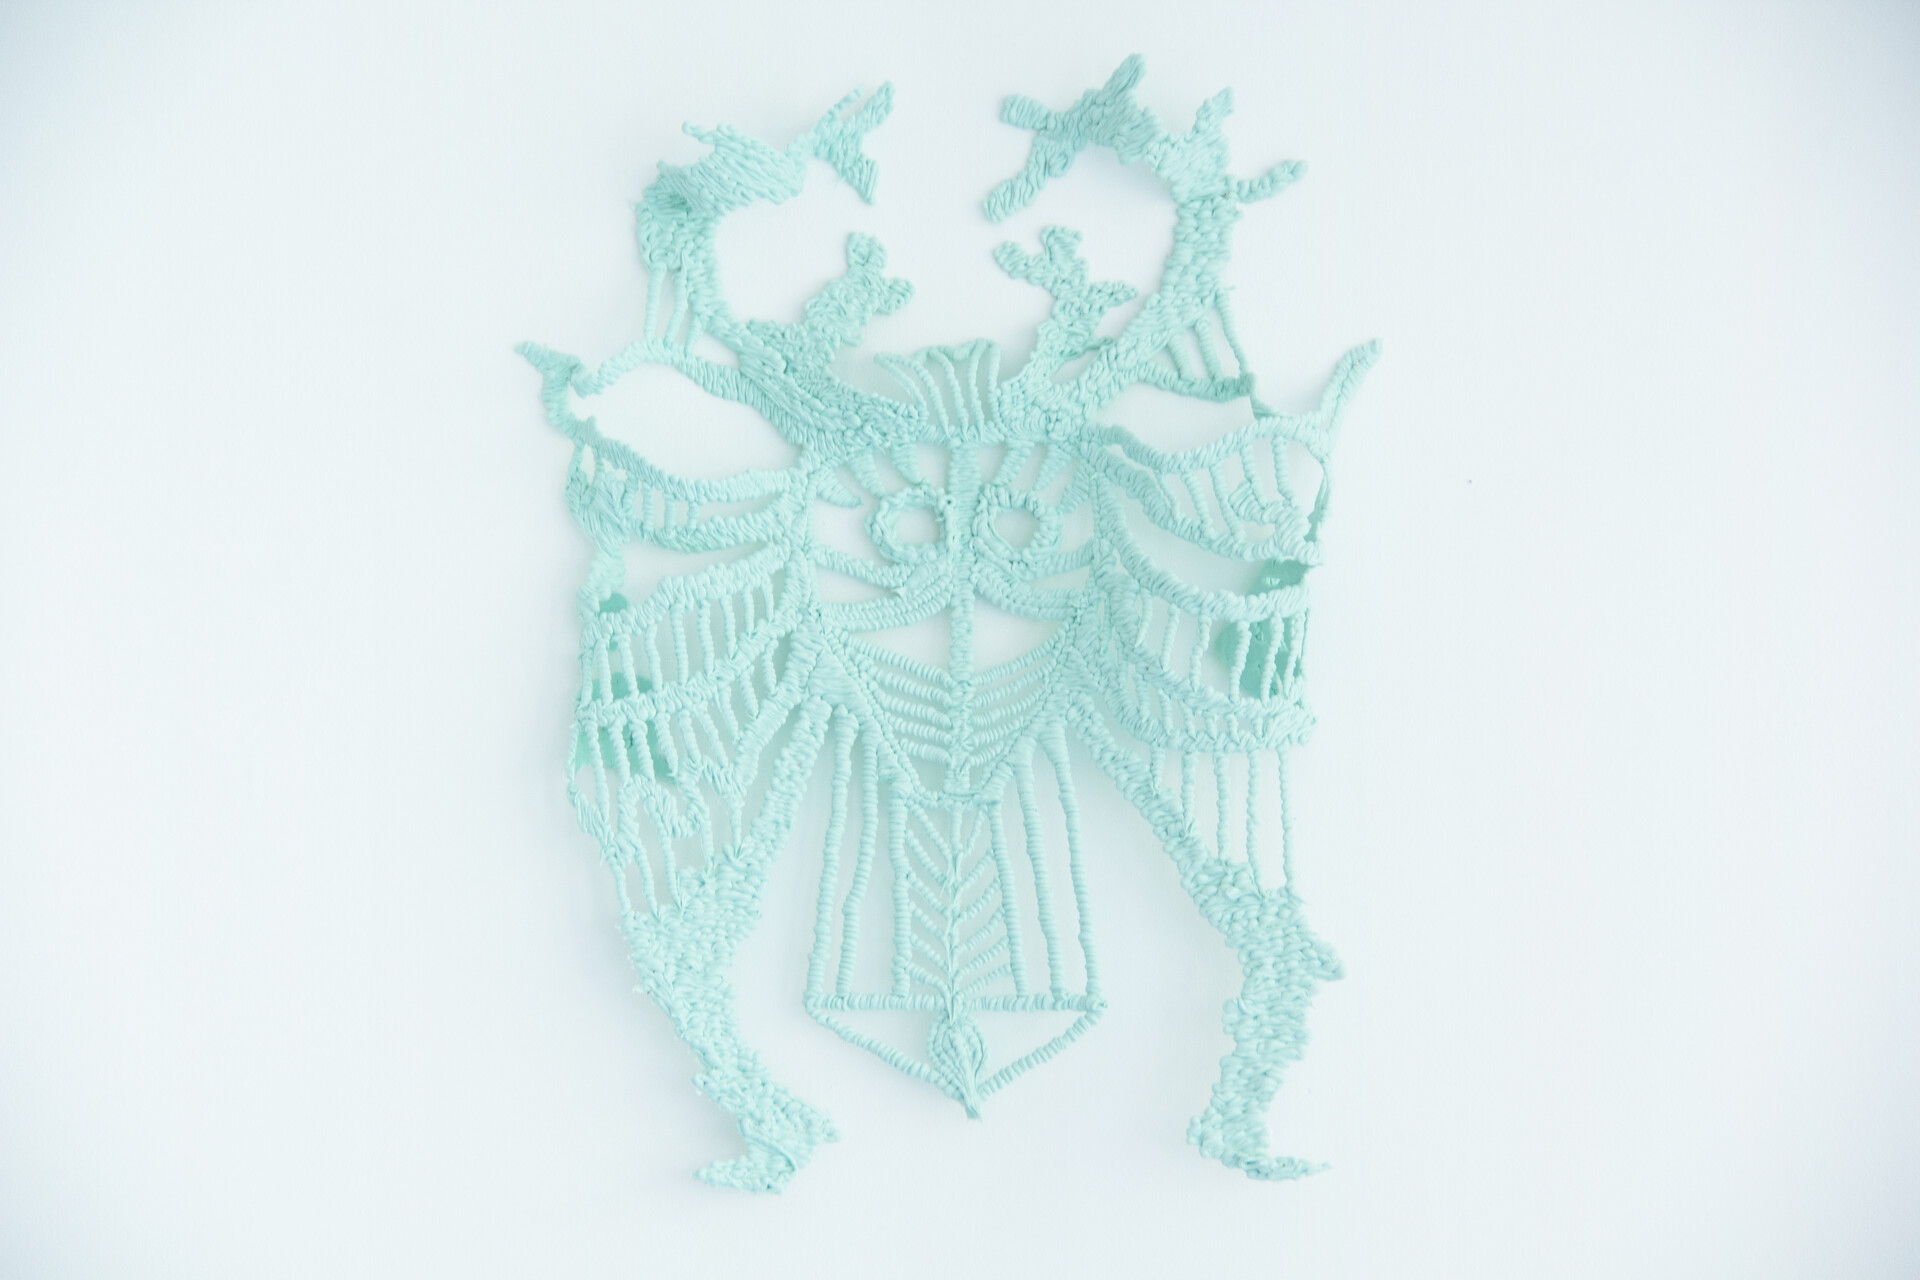 Wappen 3, 67×56cm, 2022, Silicone